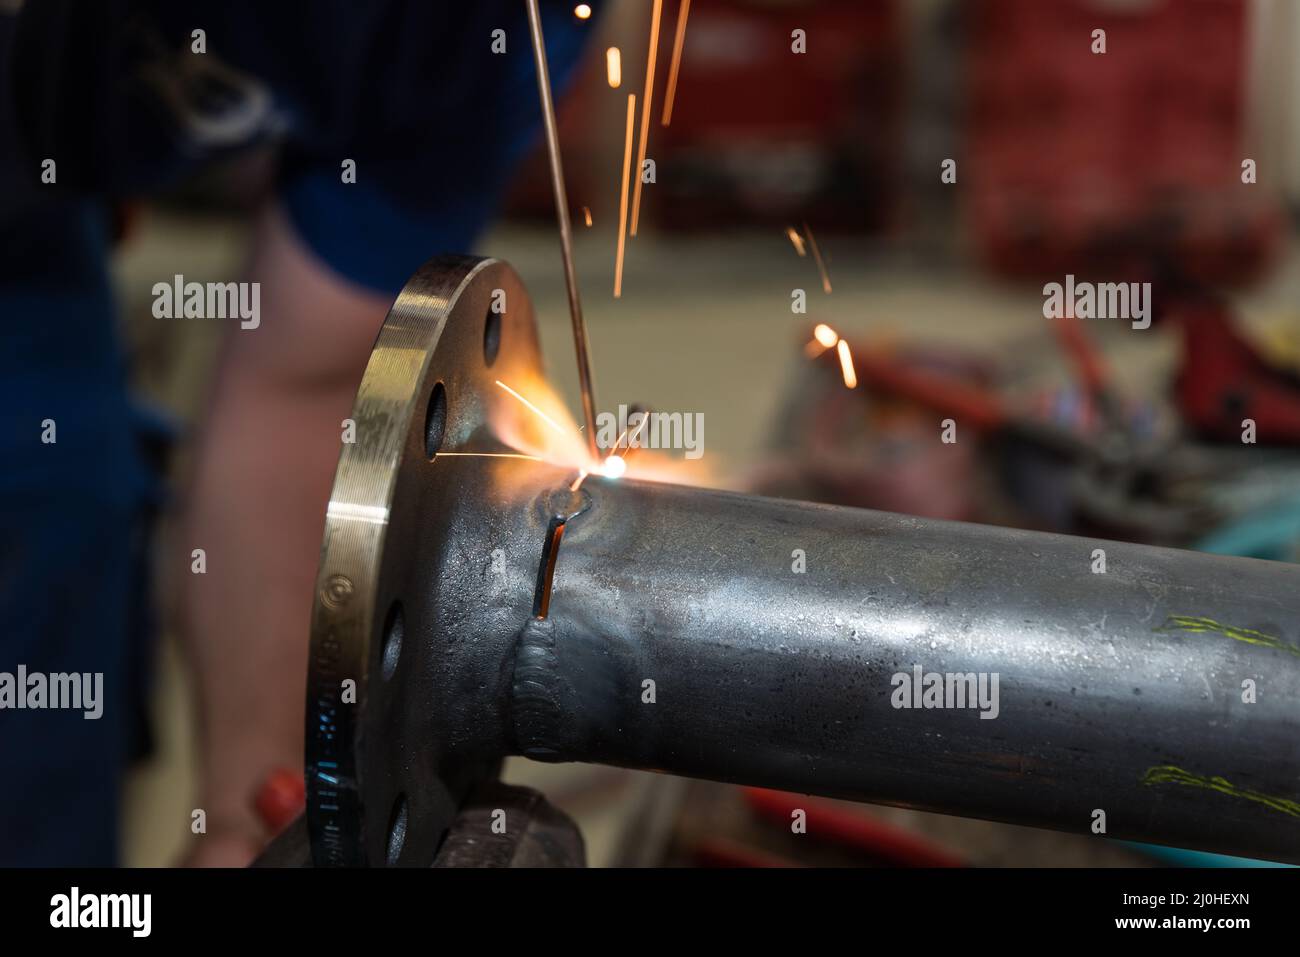 Metallarbeiter im Schweißen - Schweißtechnik für die Metallbearbeitung Stockfoto